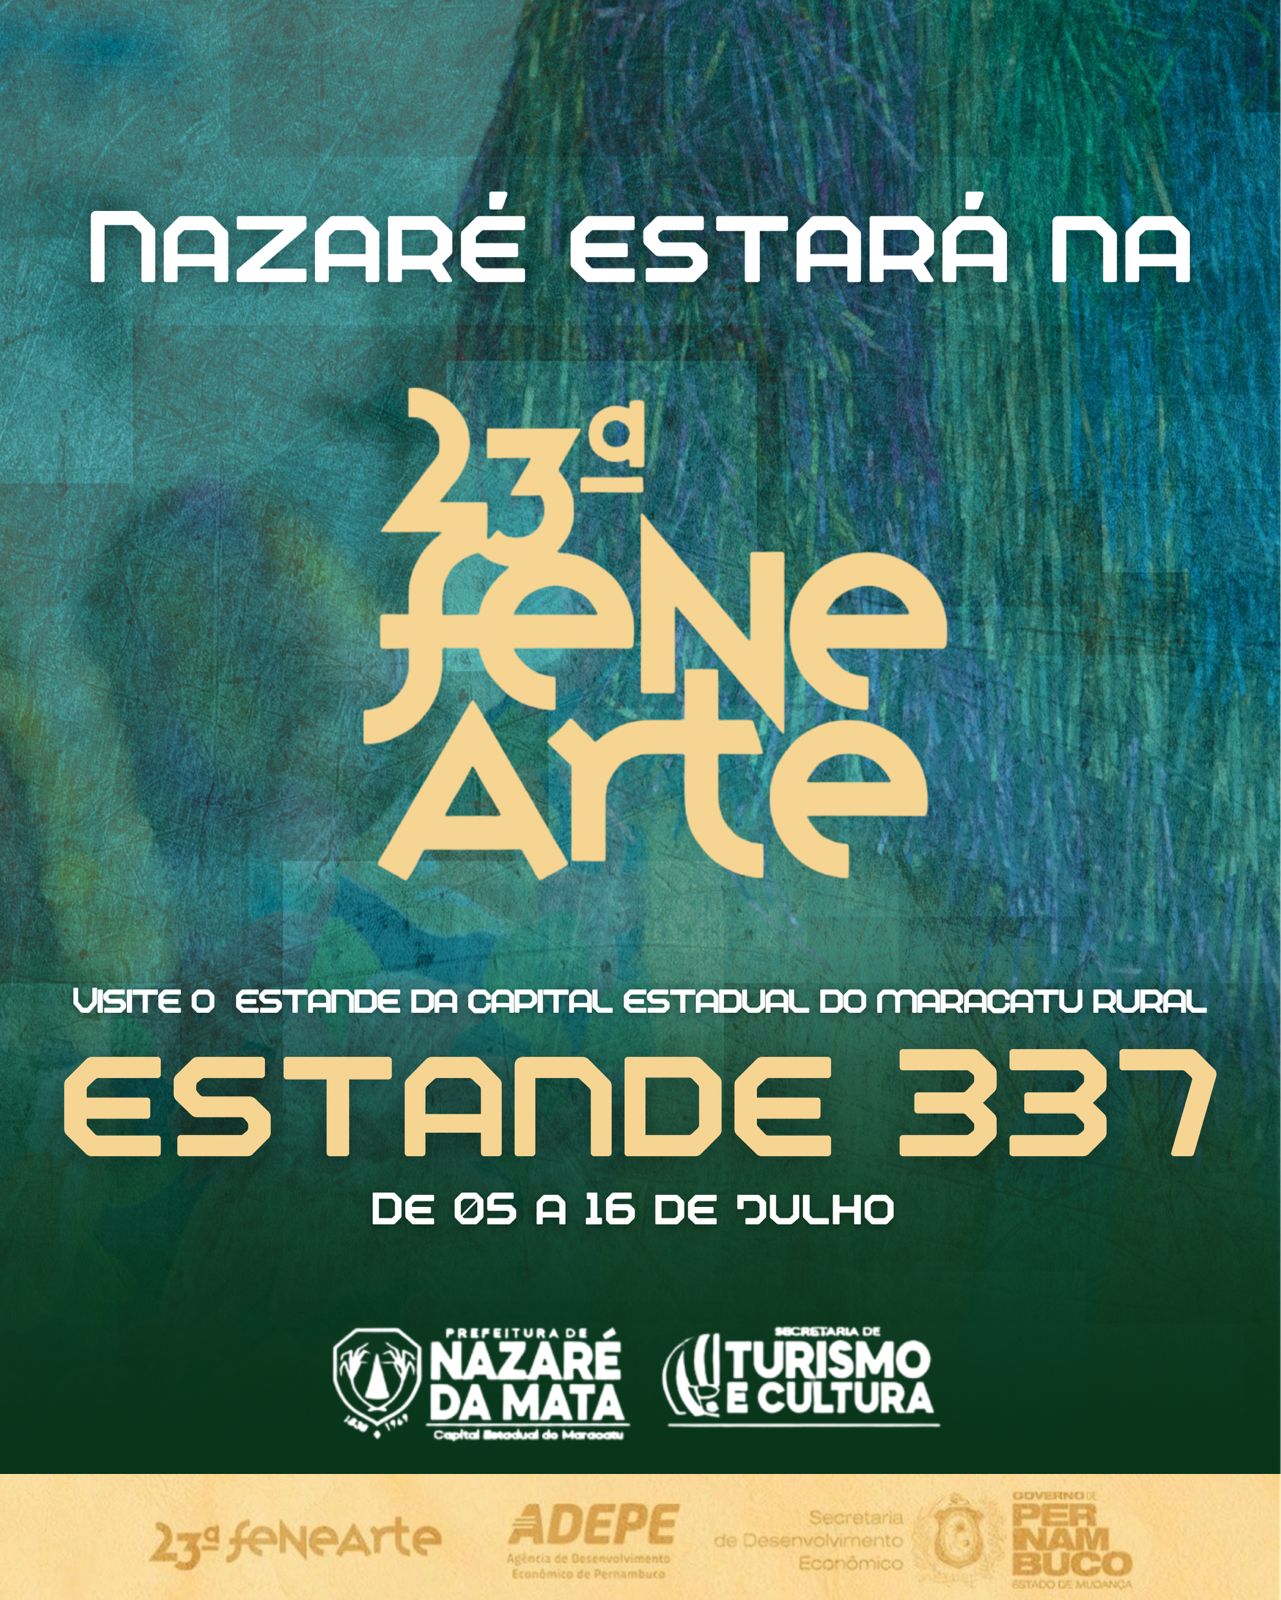 Nazaré da Mata está presente na 23ªFENEARTE